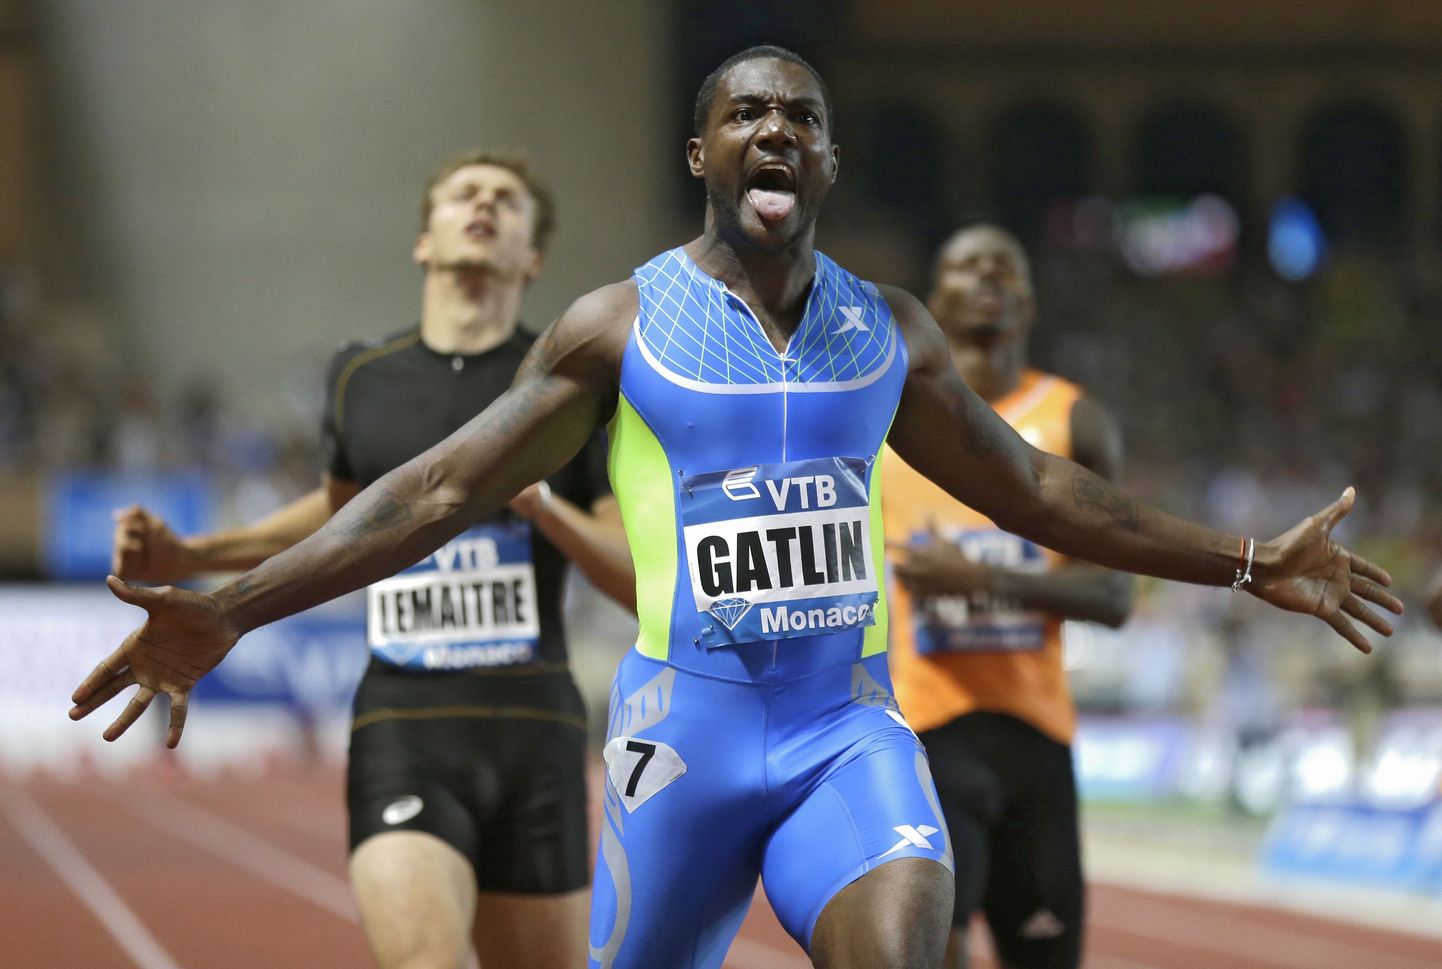 Justin Gatlin tõusis pärast dopingkaristuse lõppemist taas maailma üheks kiiremaks sprinteriks